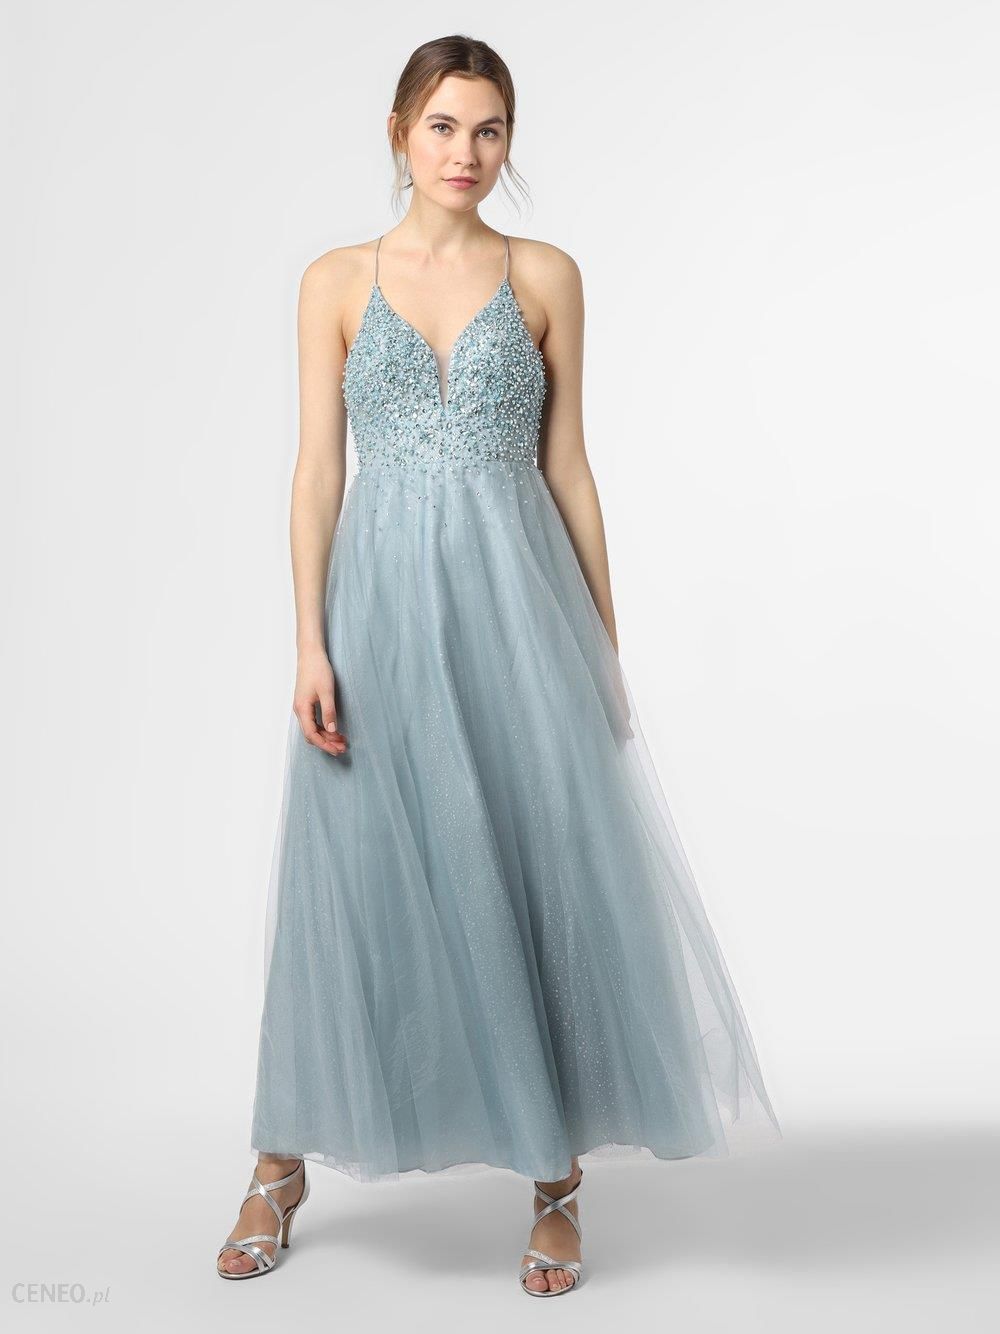 Laona - Damska sukienka wieczorowa, niebieski - Ceny i opinie 